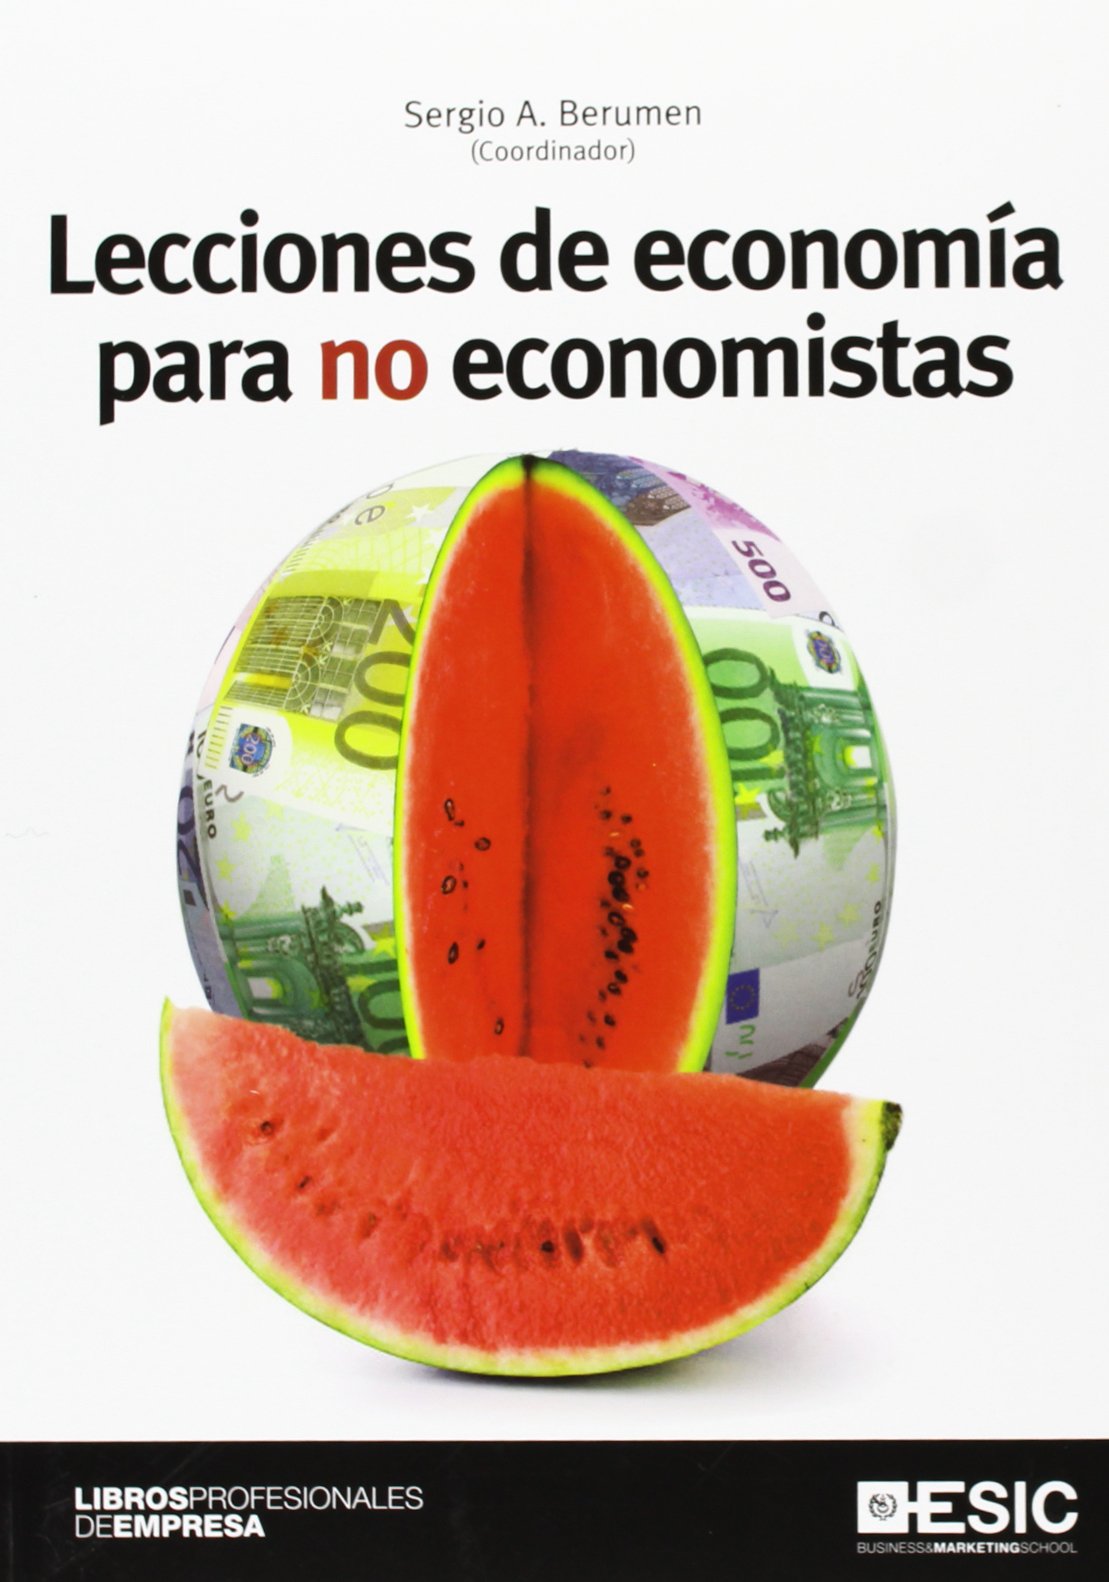 Imagen de portada del libro Lecciones de economía para no economistas